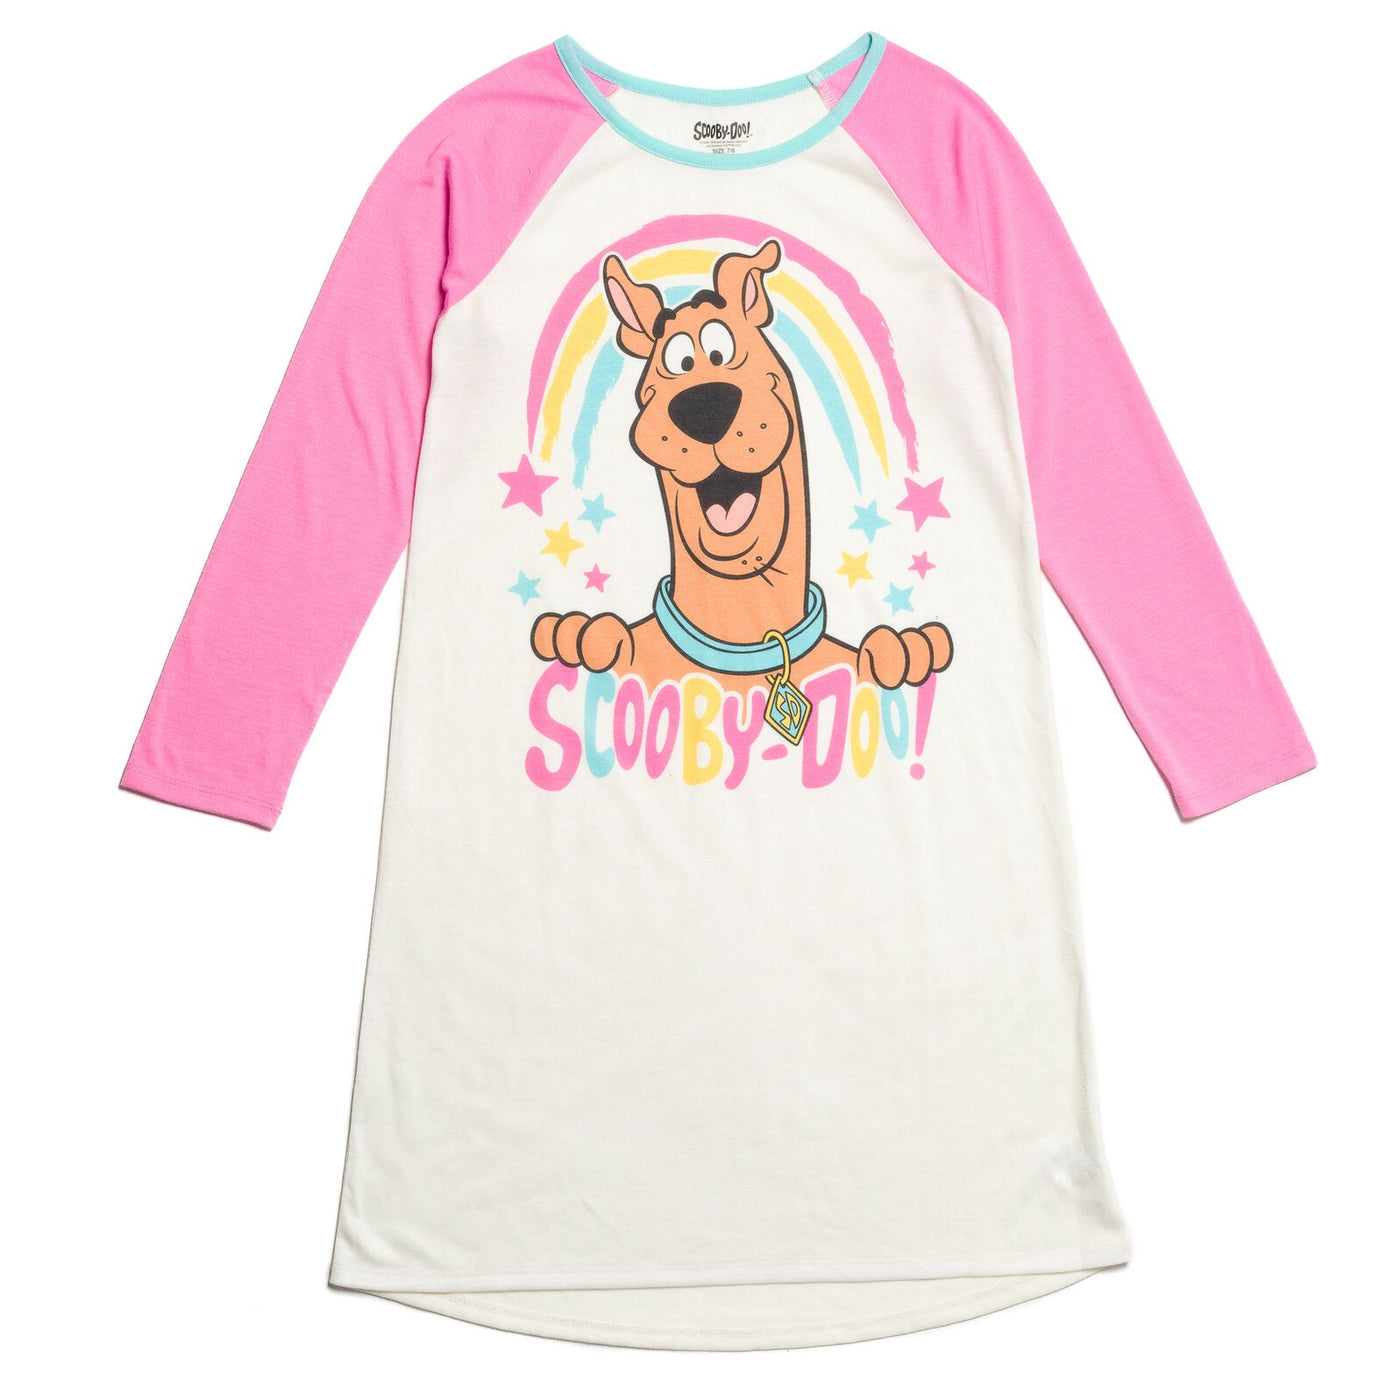 Warner Bros. Scooby Doo Nightgown Pajamas - imagikids